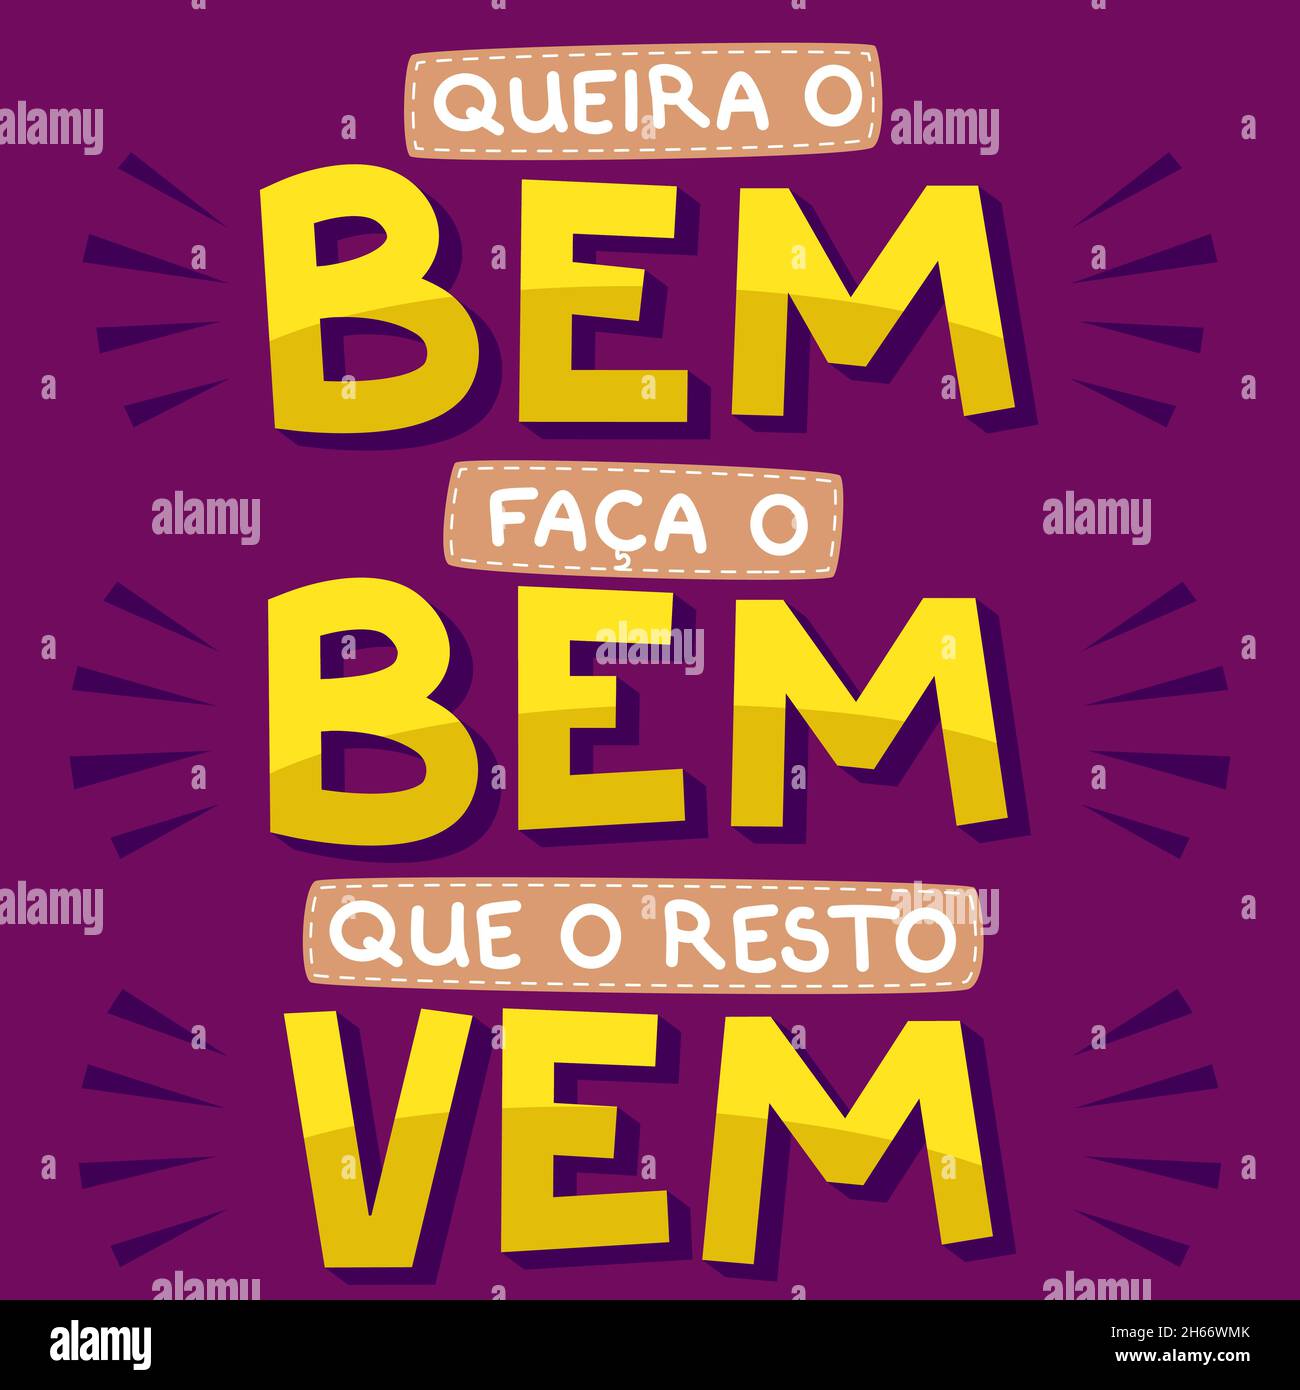 Affiche de motivation colorée en portugais brésilien.Traduction - voulez le bien, faites le bien, le reste vient Illustration de Vecteur